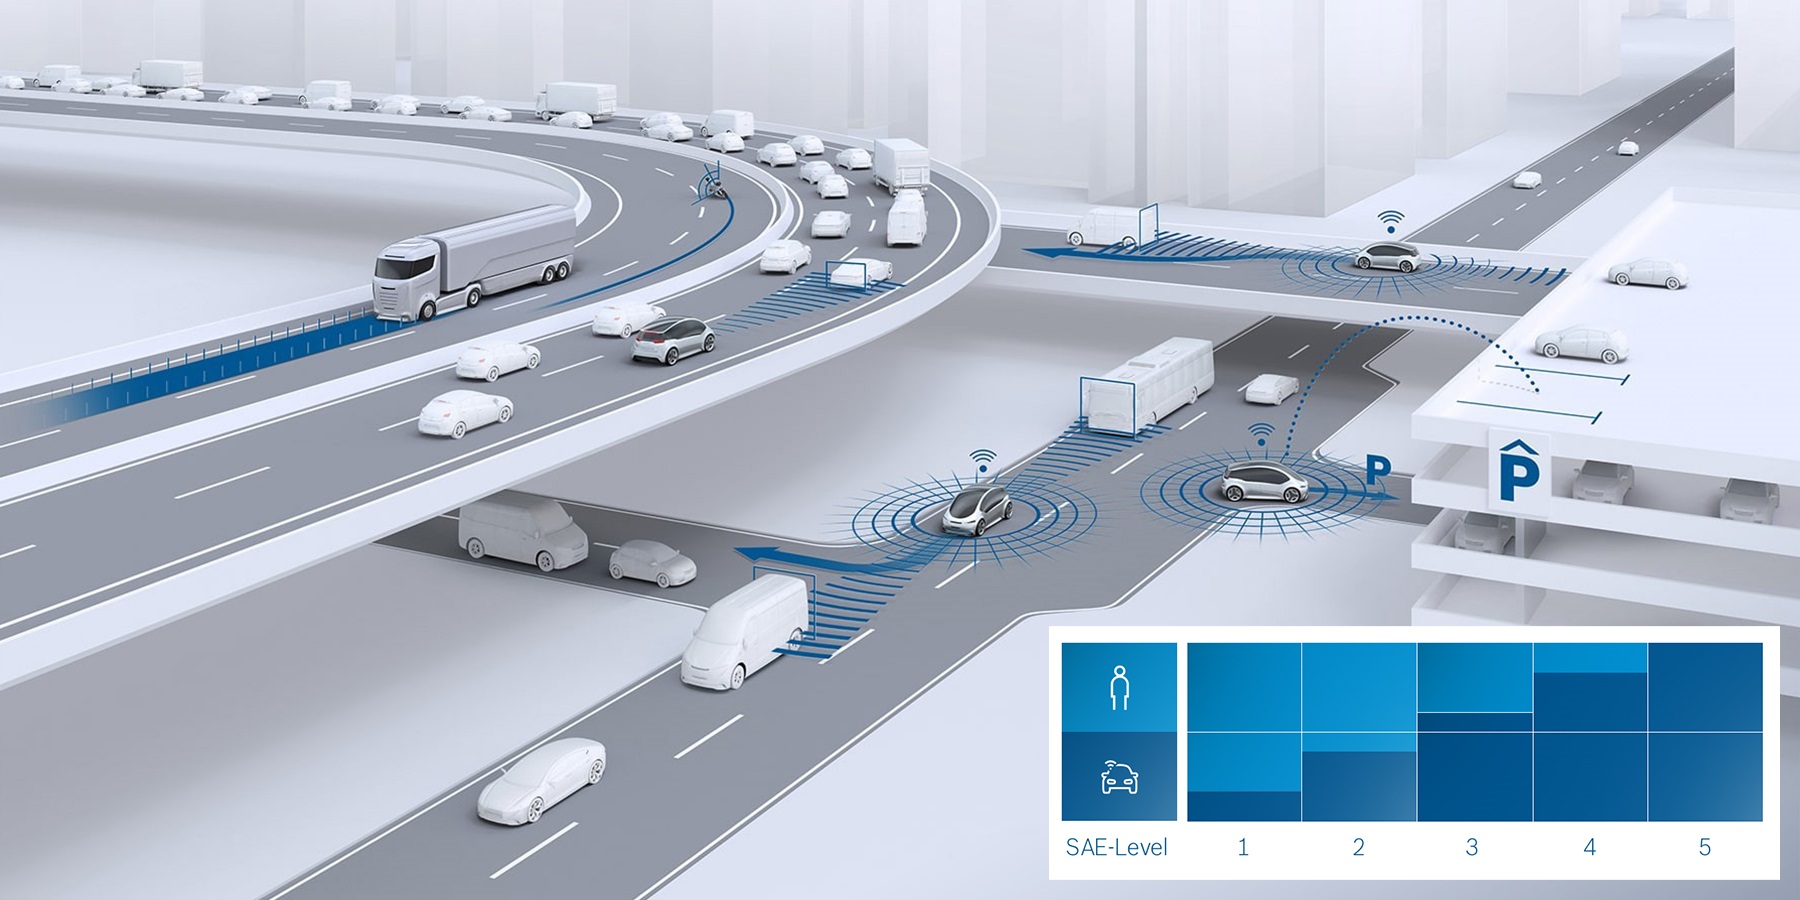 Software development autonomous vehicles (image credit: Bosch)